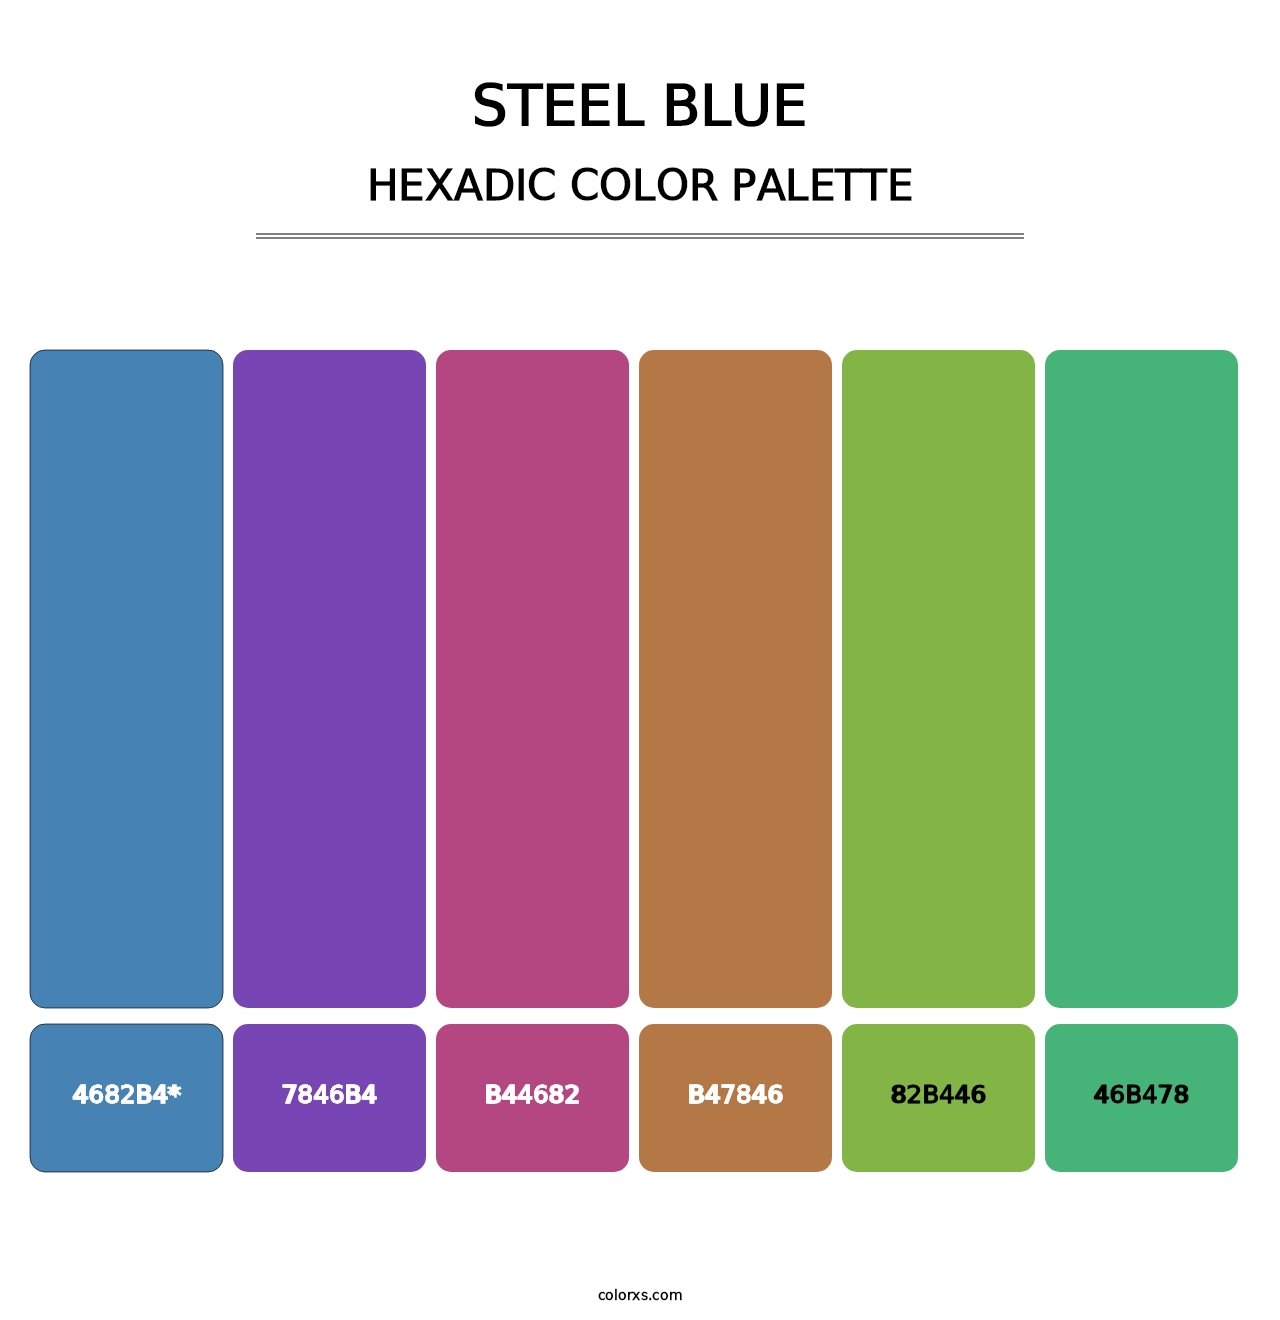 Steel Blue - Hexadic Color Palette